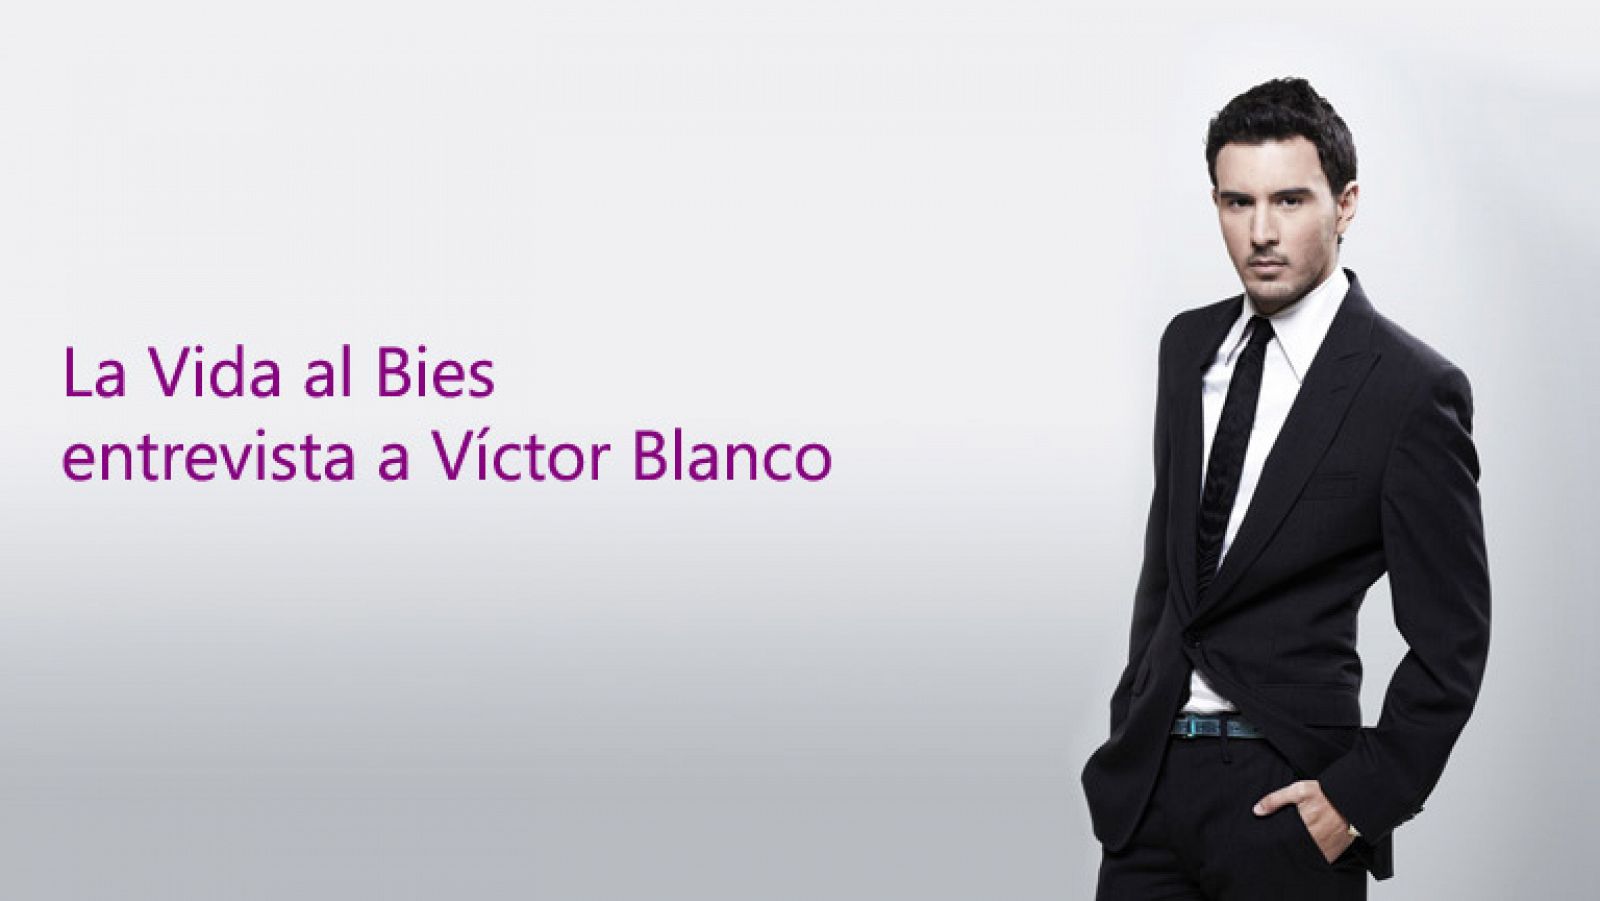 La vida al Bies entrevista a Víctor Blanco